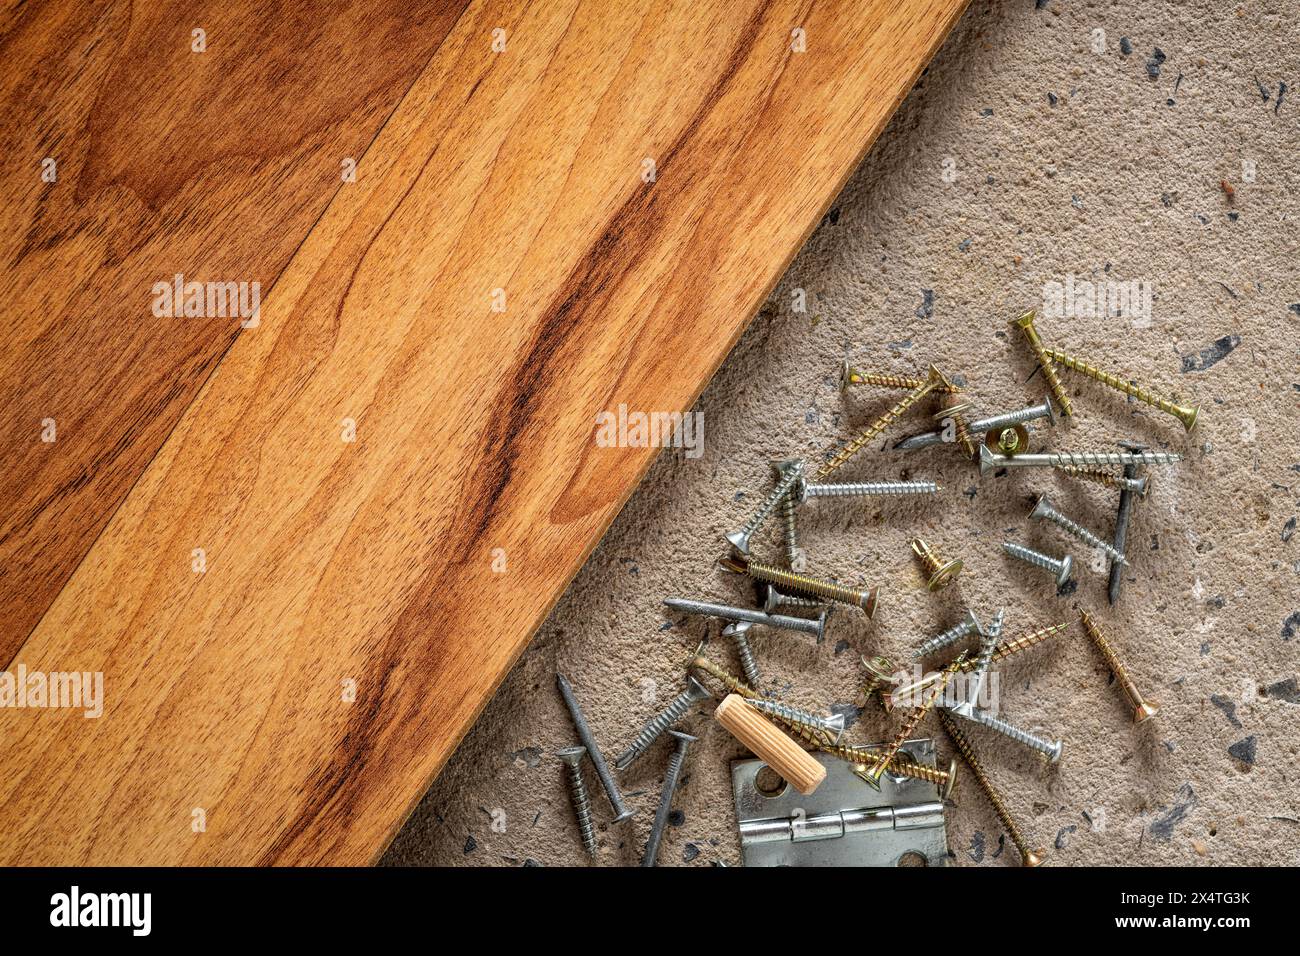 Schraube, Nagel auf Beton Holz Textur Hintergrund. Nahaufnahme von Schrauben und Nägeln auf Zement- und Holzboden mit Kopierraum. Stockfoto